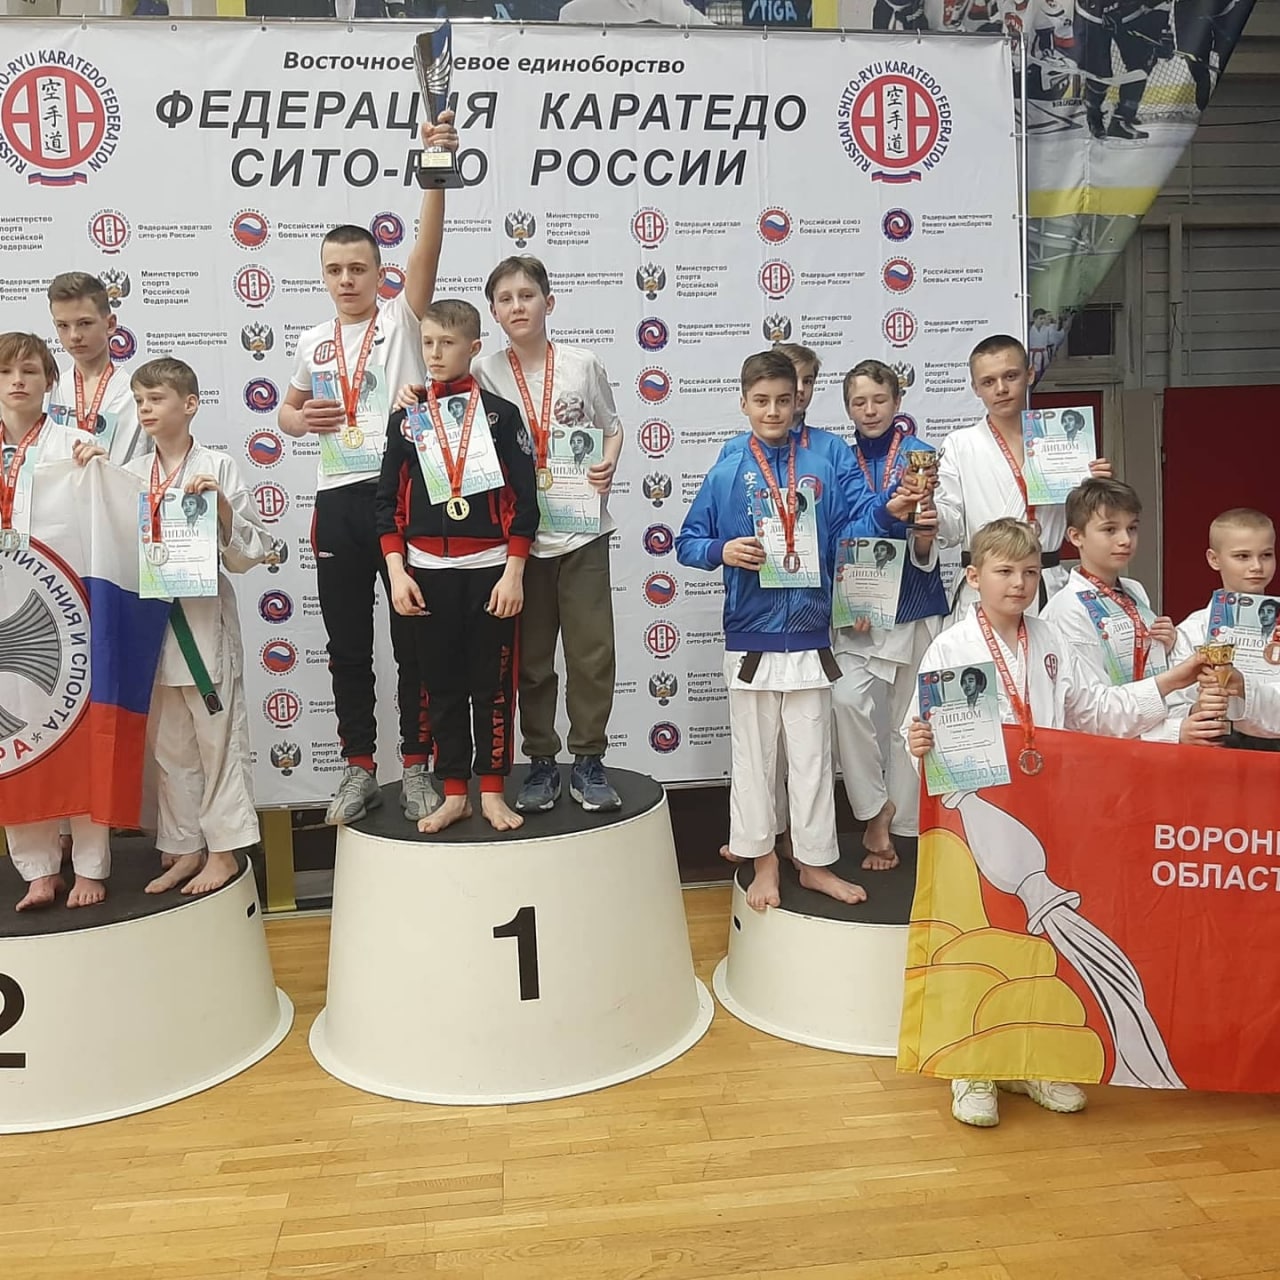 Коломенские борцы завоевали медали на Всероссийских соревнованиях